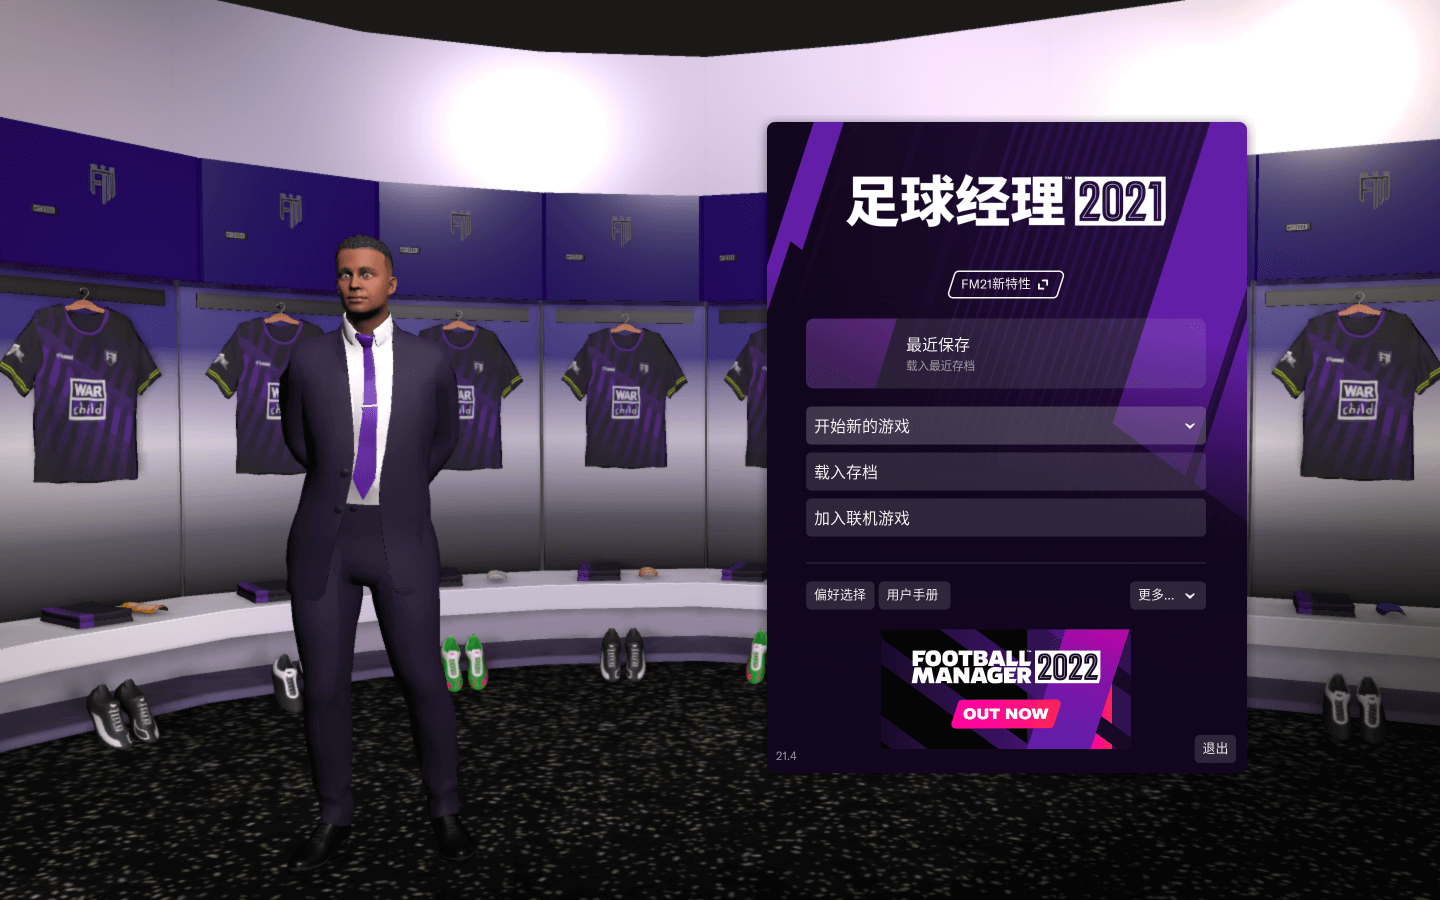 足球经理2021 for Mac v21.4.0 Football Manager 2021 中文原生版 苹果电脑